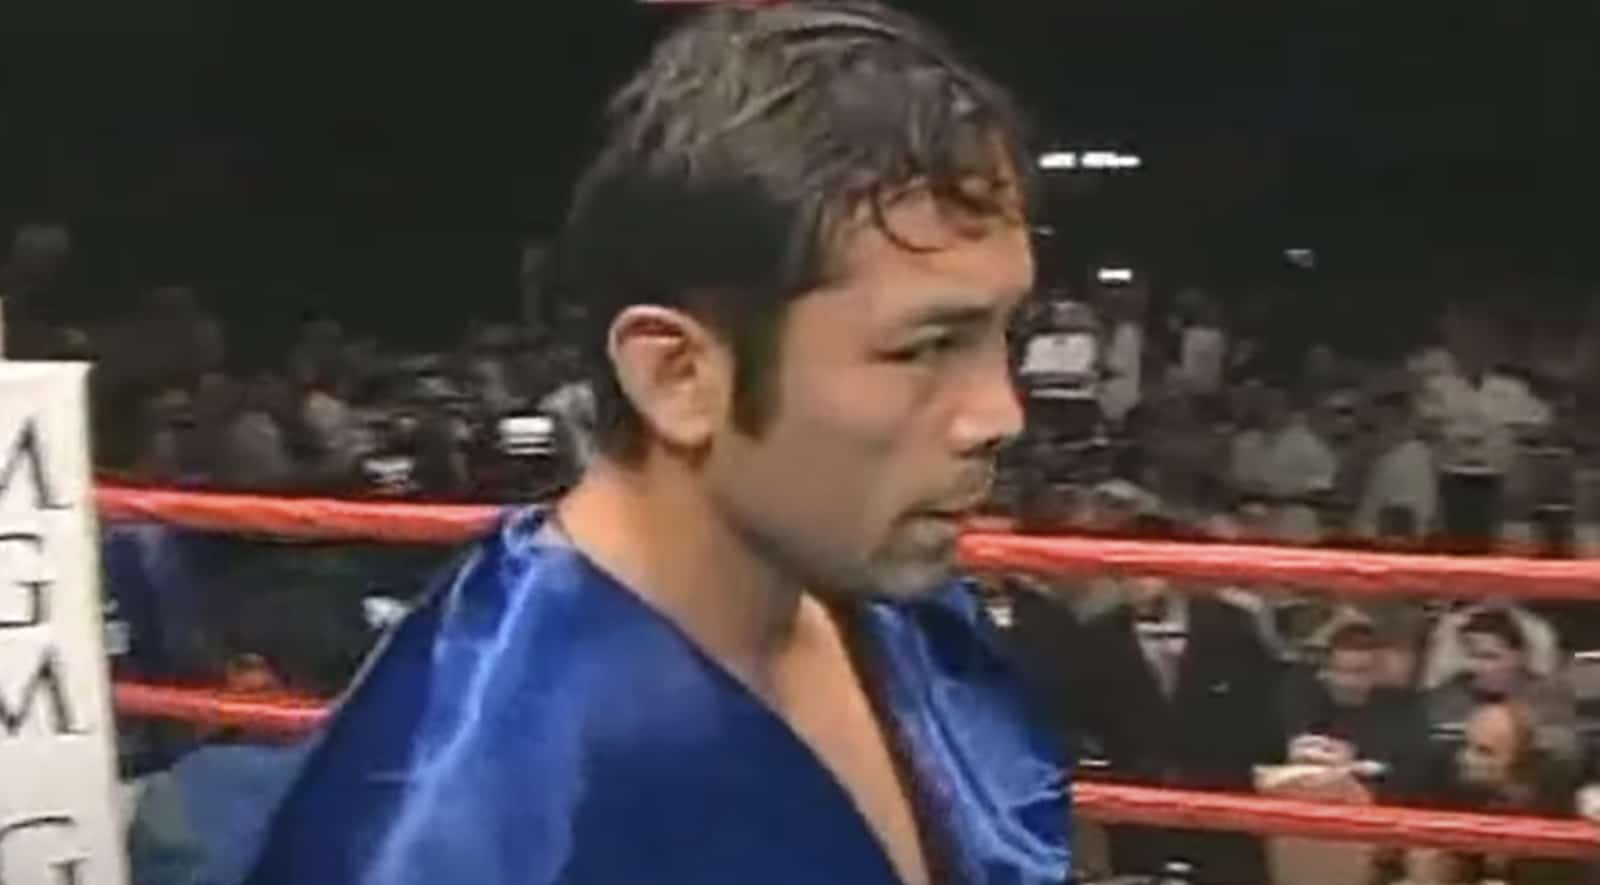 Carlos Hernandez boxing image / photo